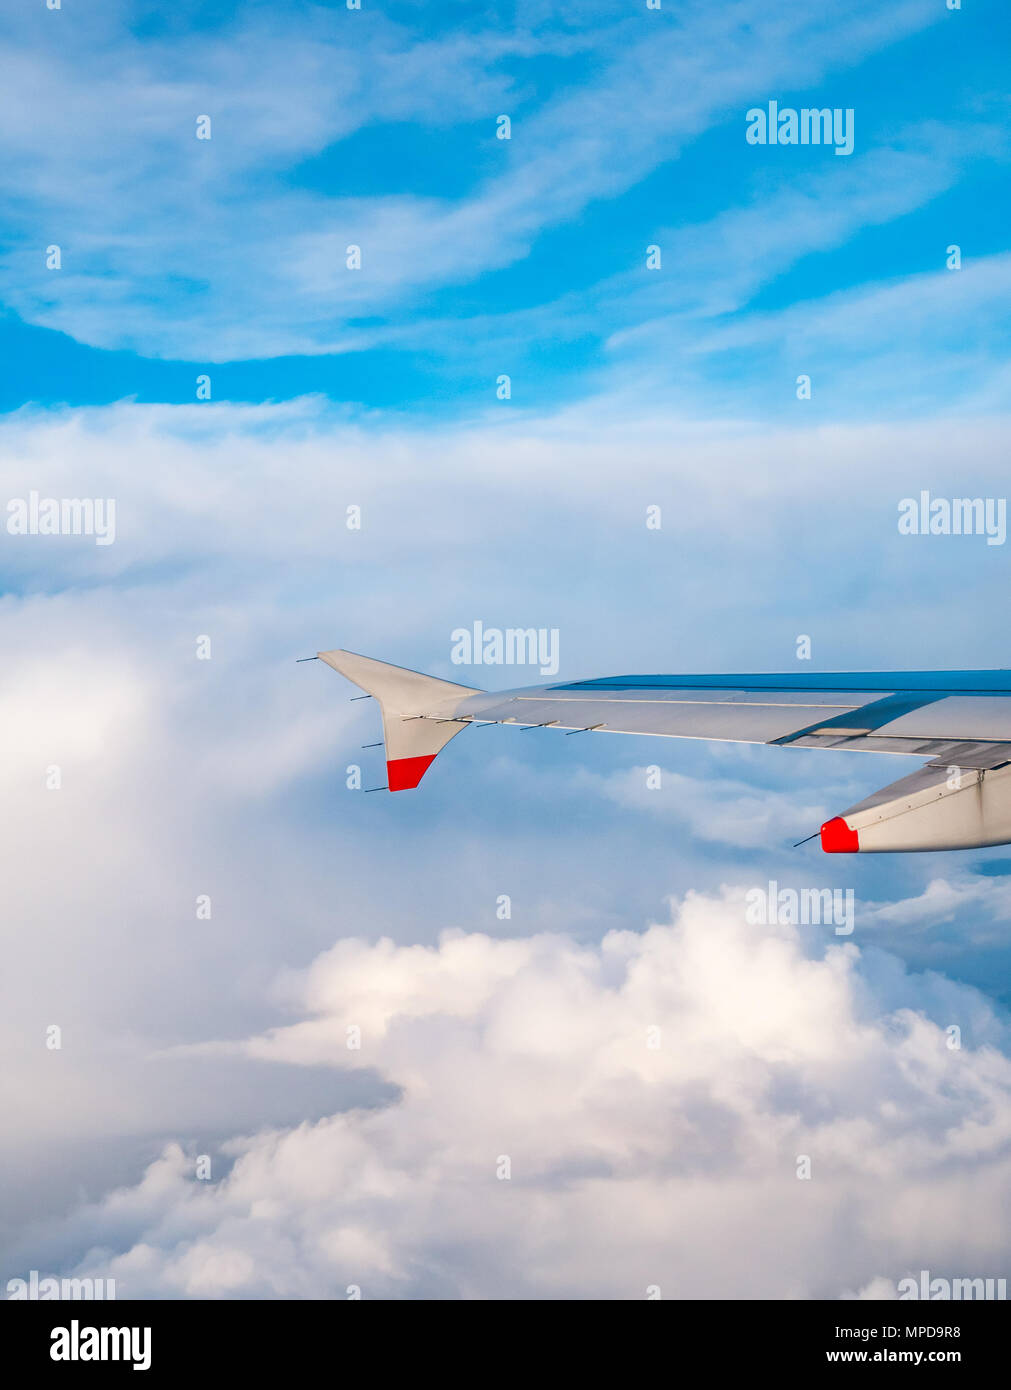 British Airways Airbus 319 aile d'avion vu d'avion en vol au-dessus de la fenêtre de puffy et fins nuages et ciel bleu clair en Royaume-Uni Banque D'Images